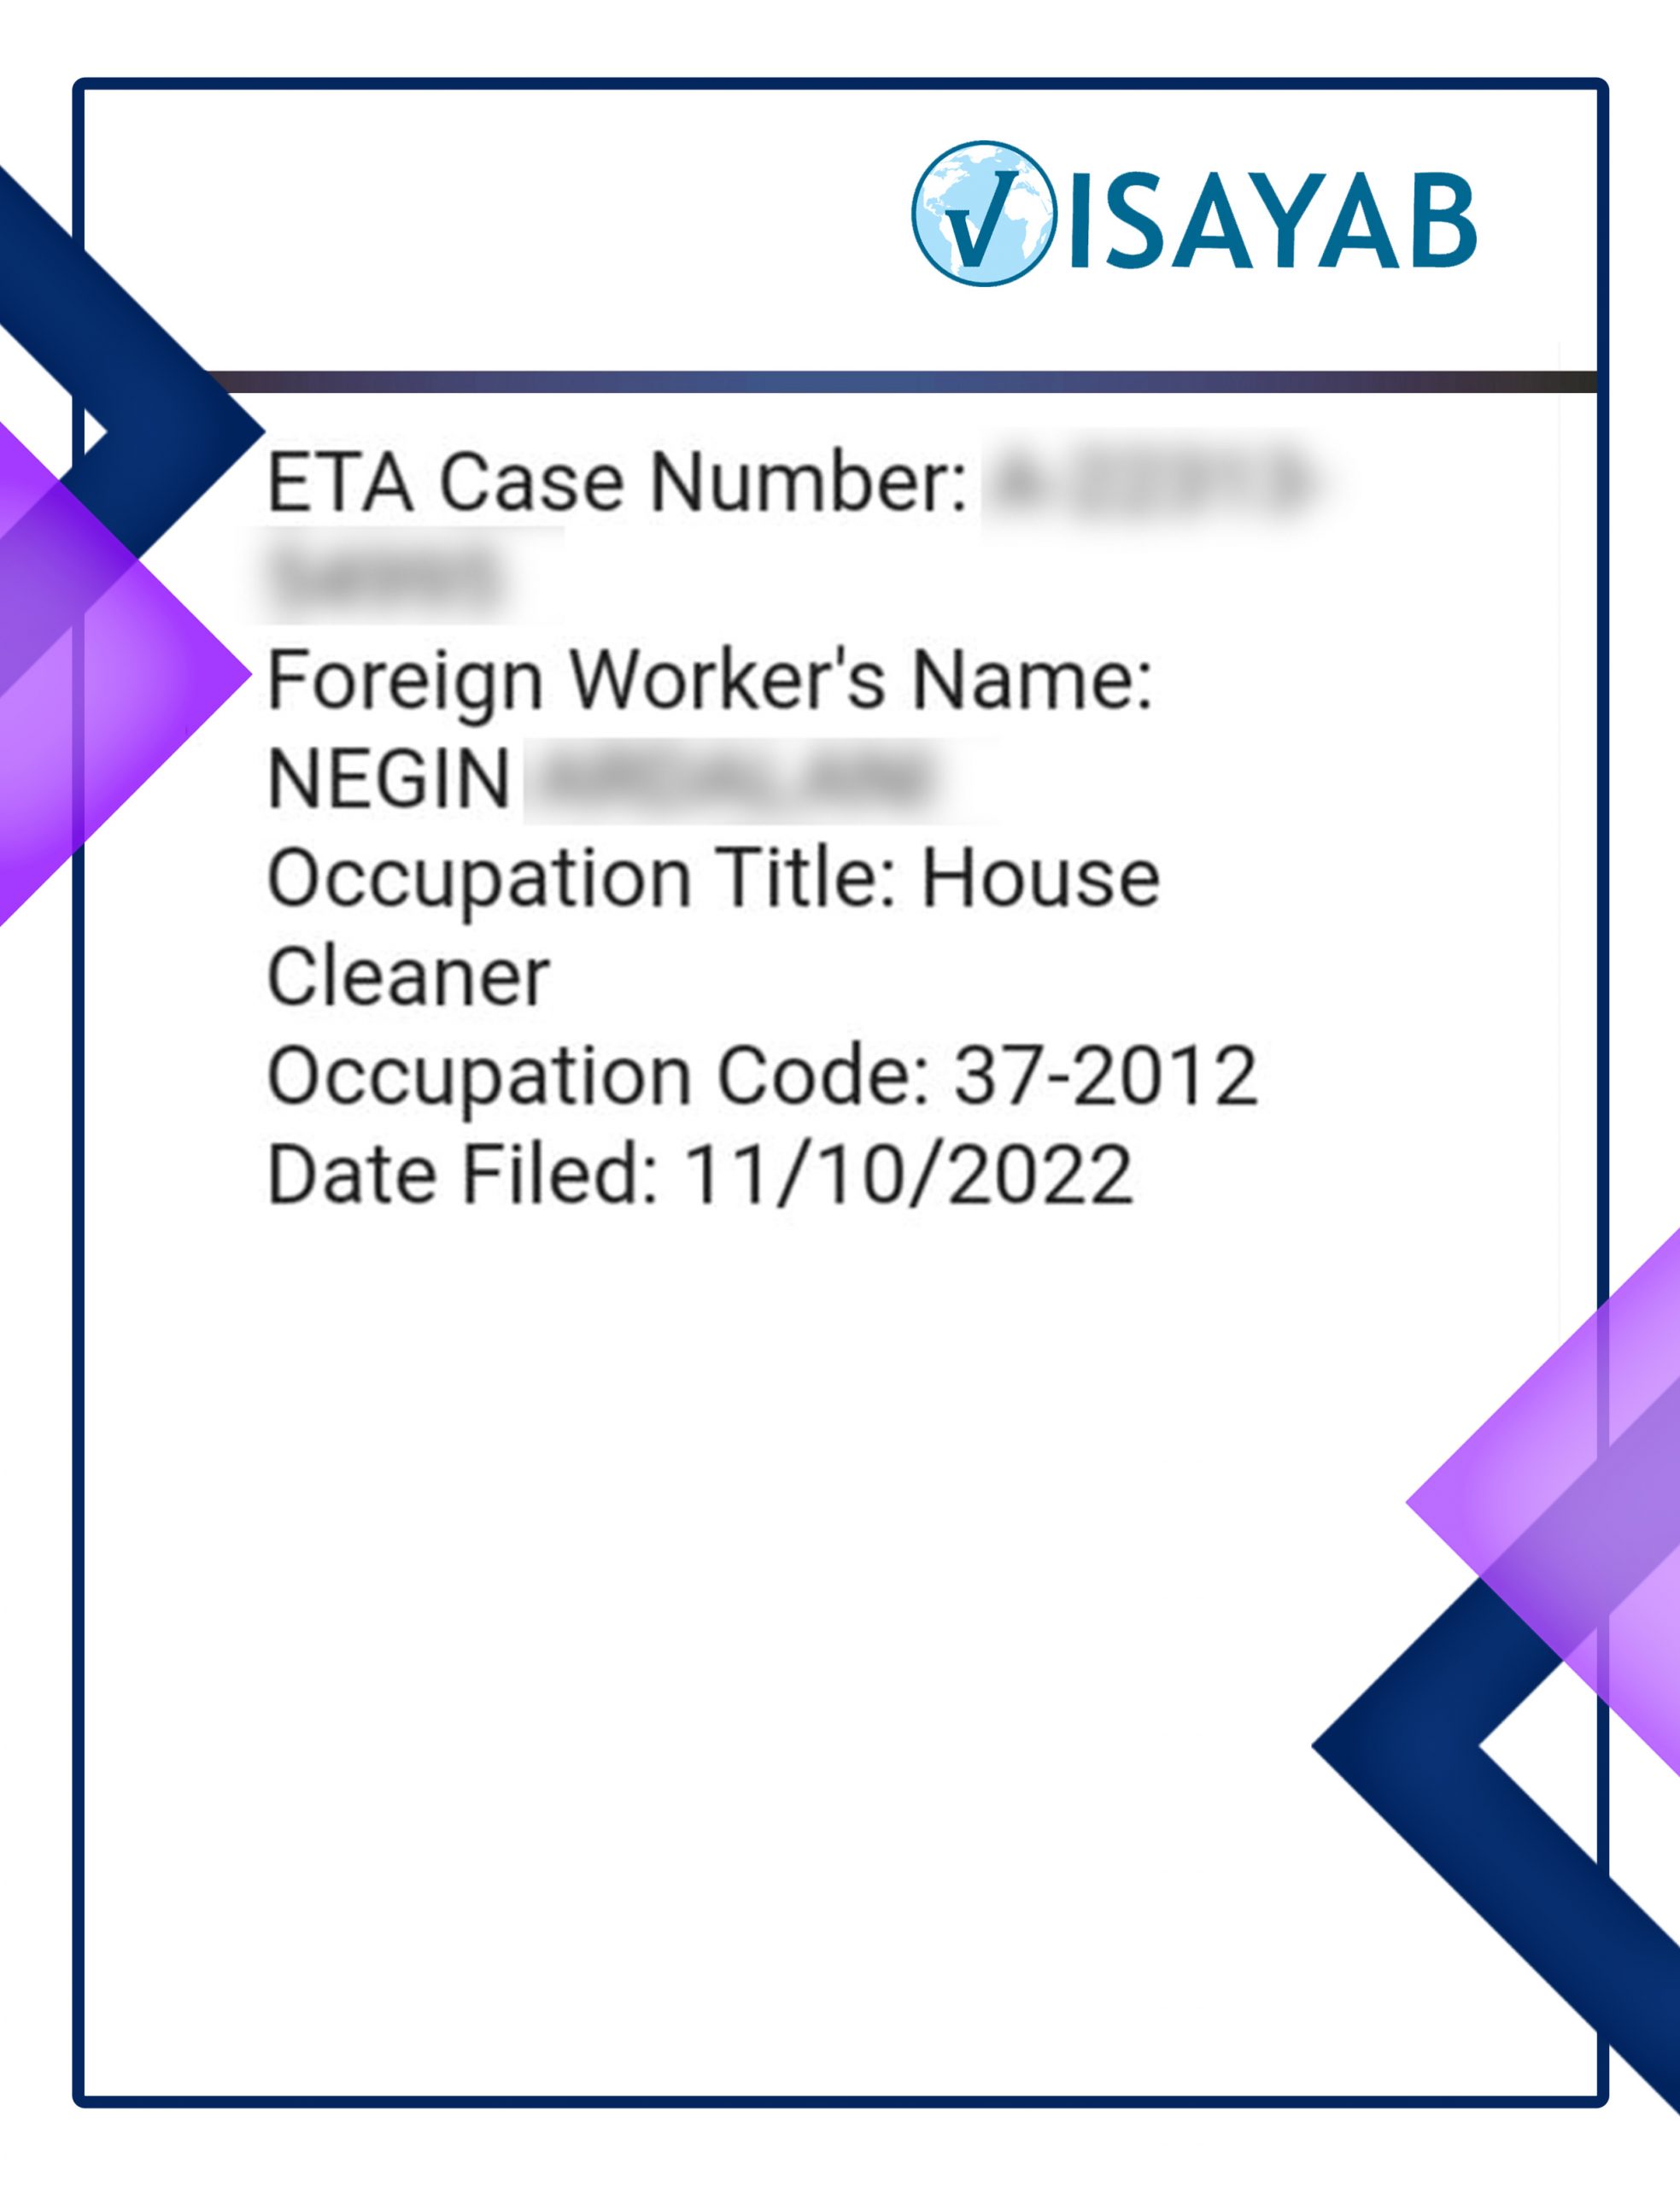 اخذ ETA Case number امریکا